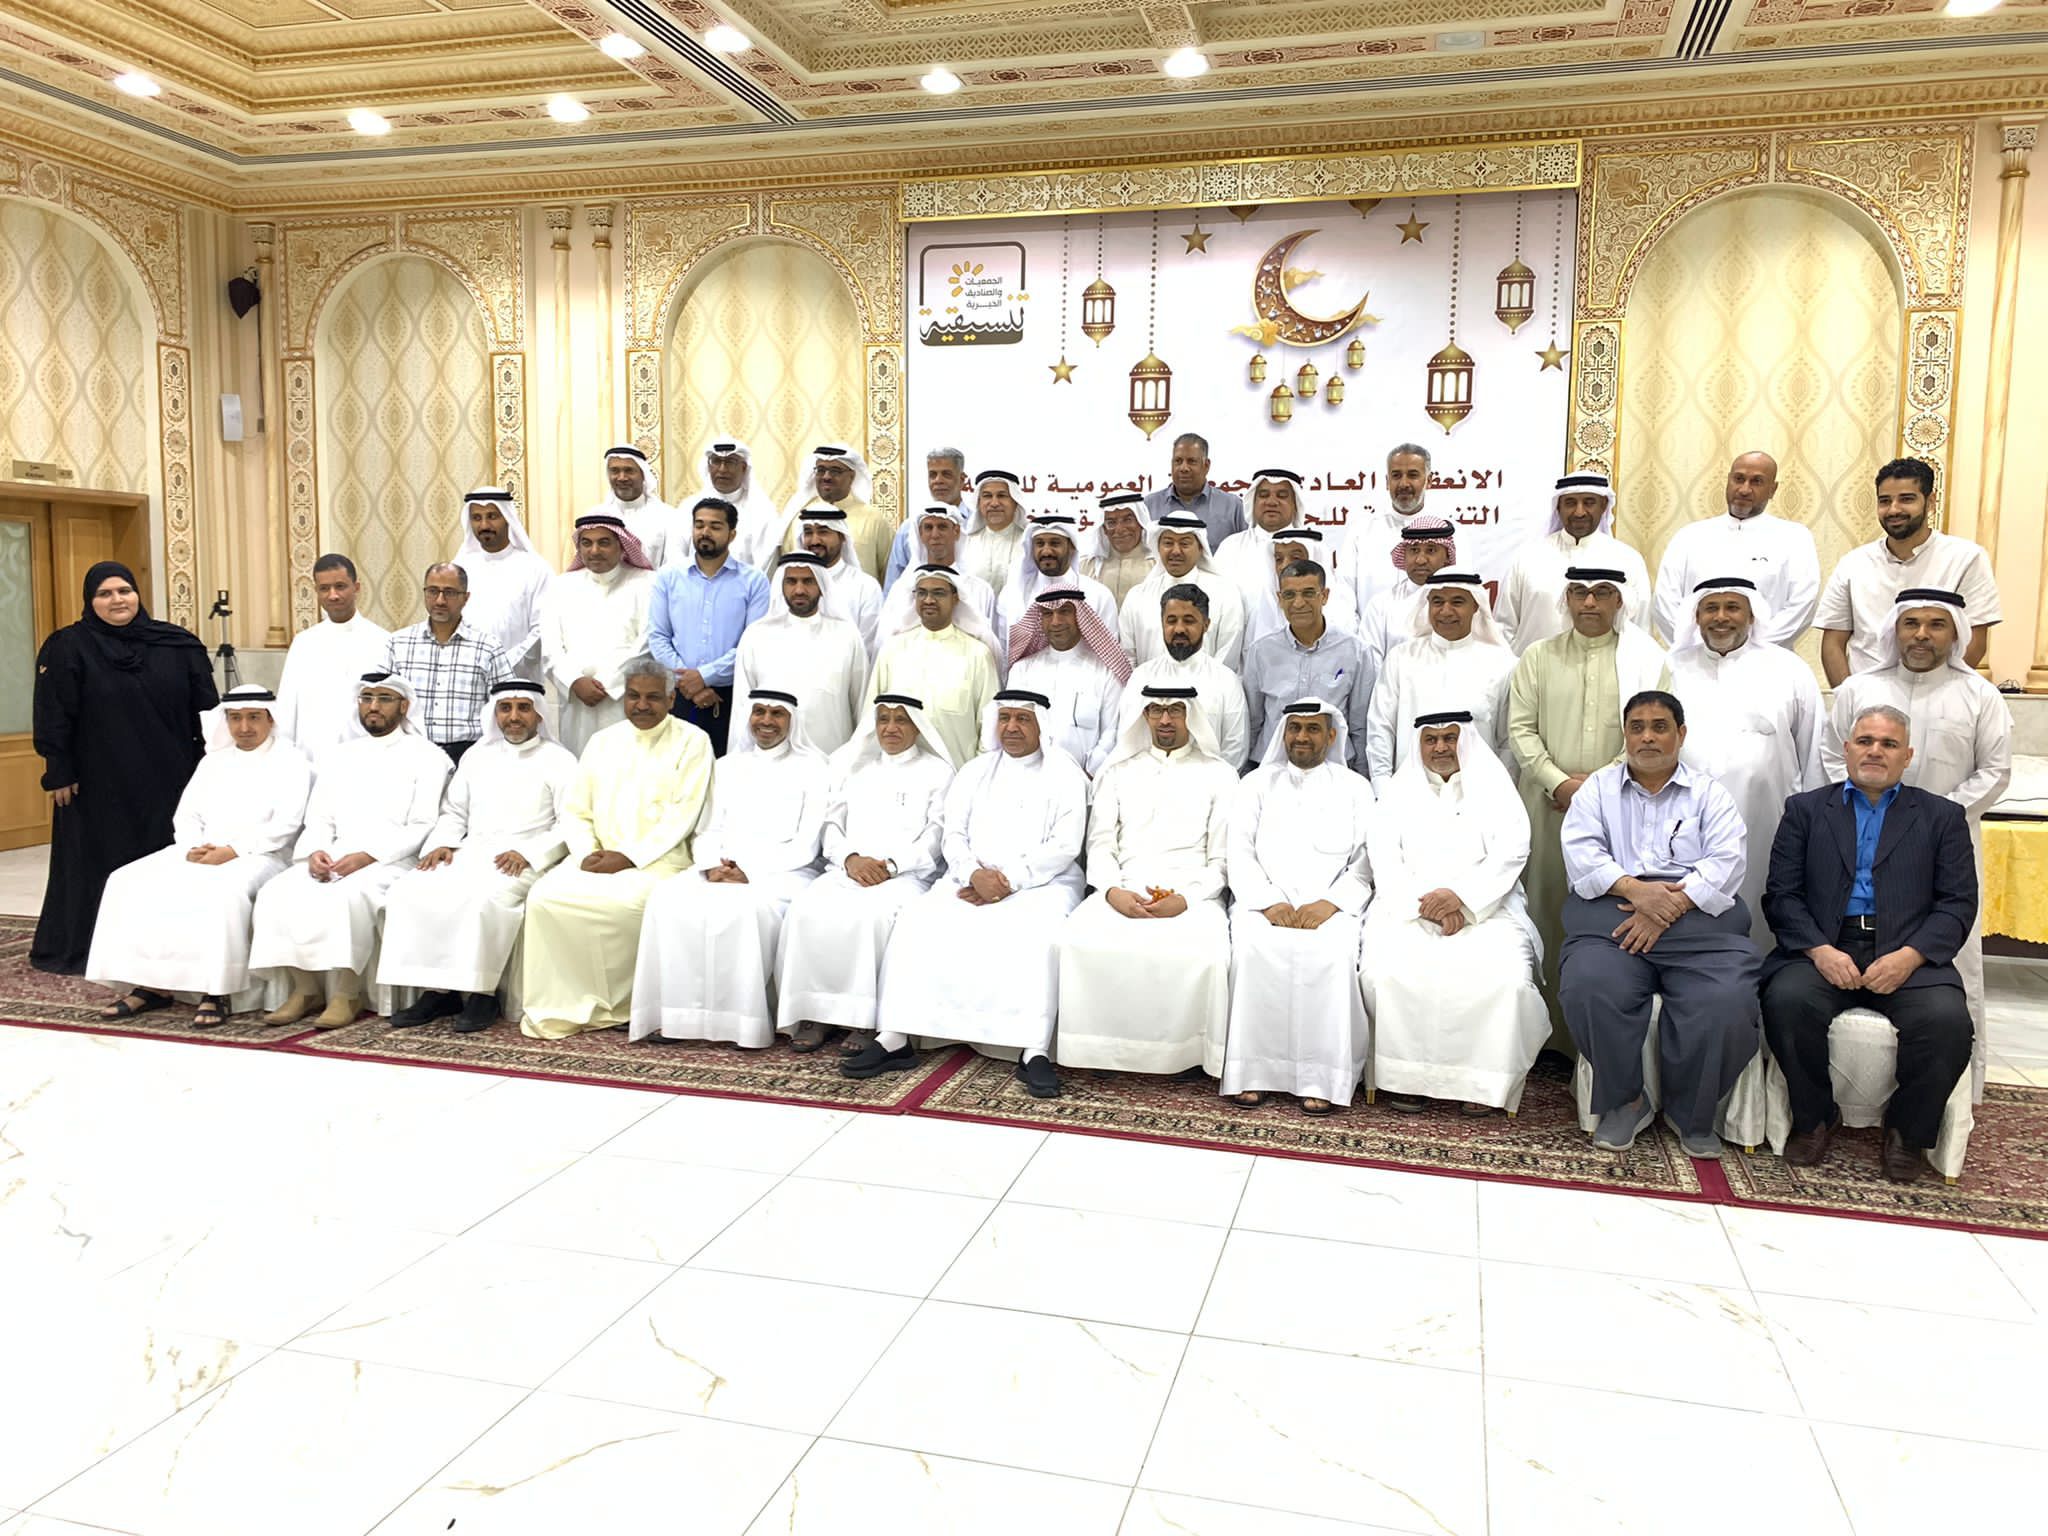 البناء يشارك في عمومية اللجنة التنسيقية لجمعيات وصناديق مملكة البحرين